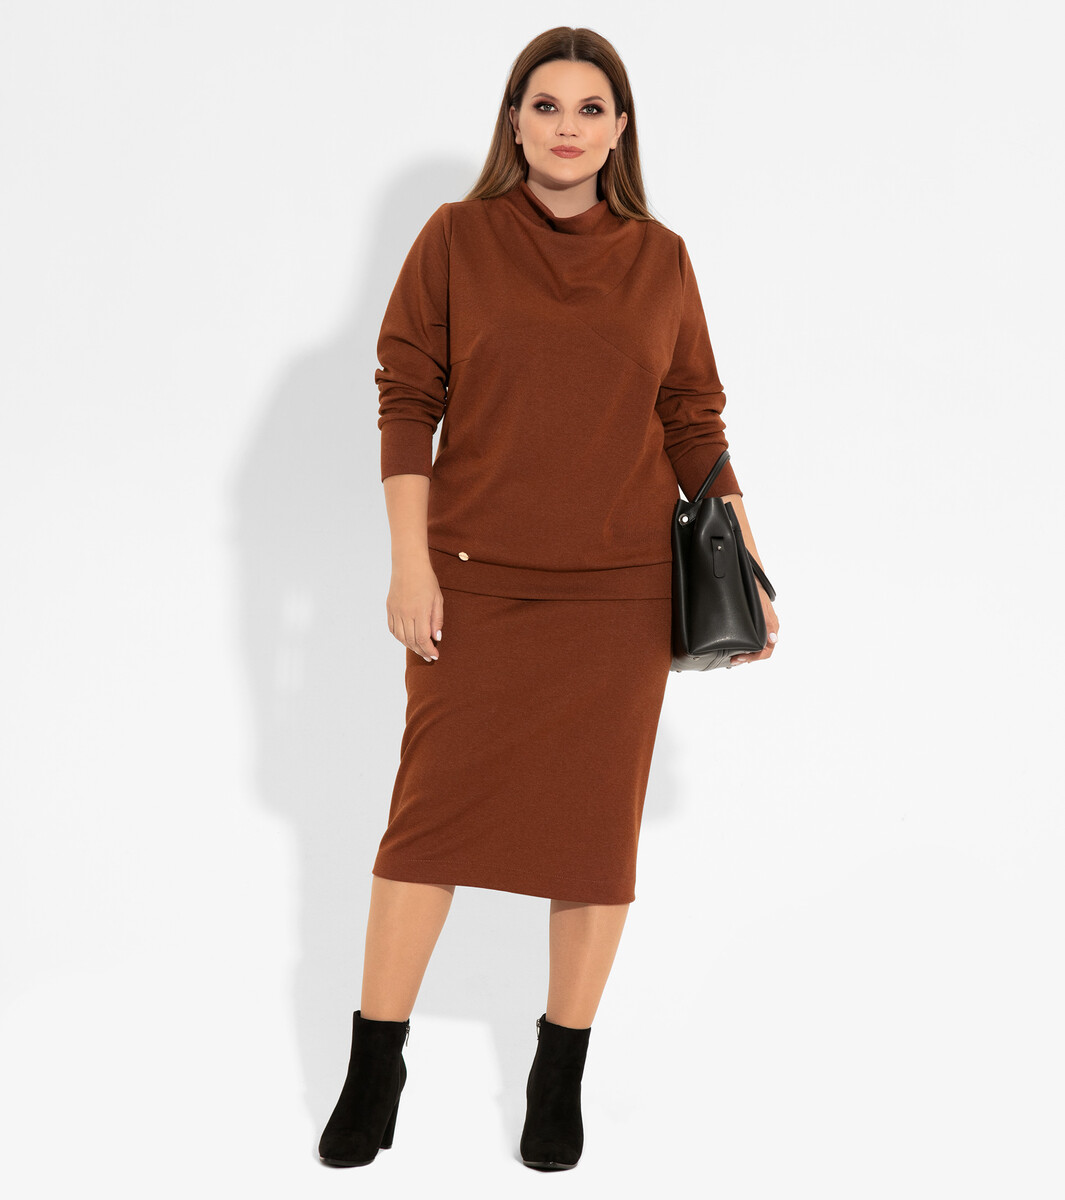 Комплект женский (джемпер, юбка) PANDA, размер 54, цвет терракотовый 01121929 - фото 1